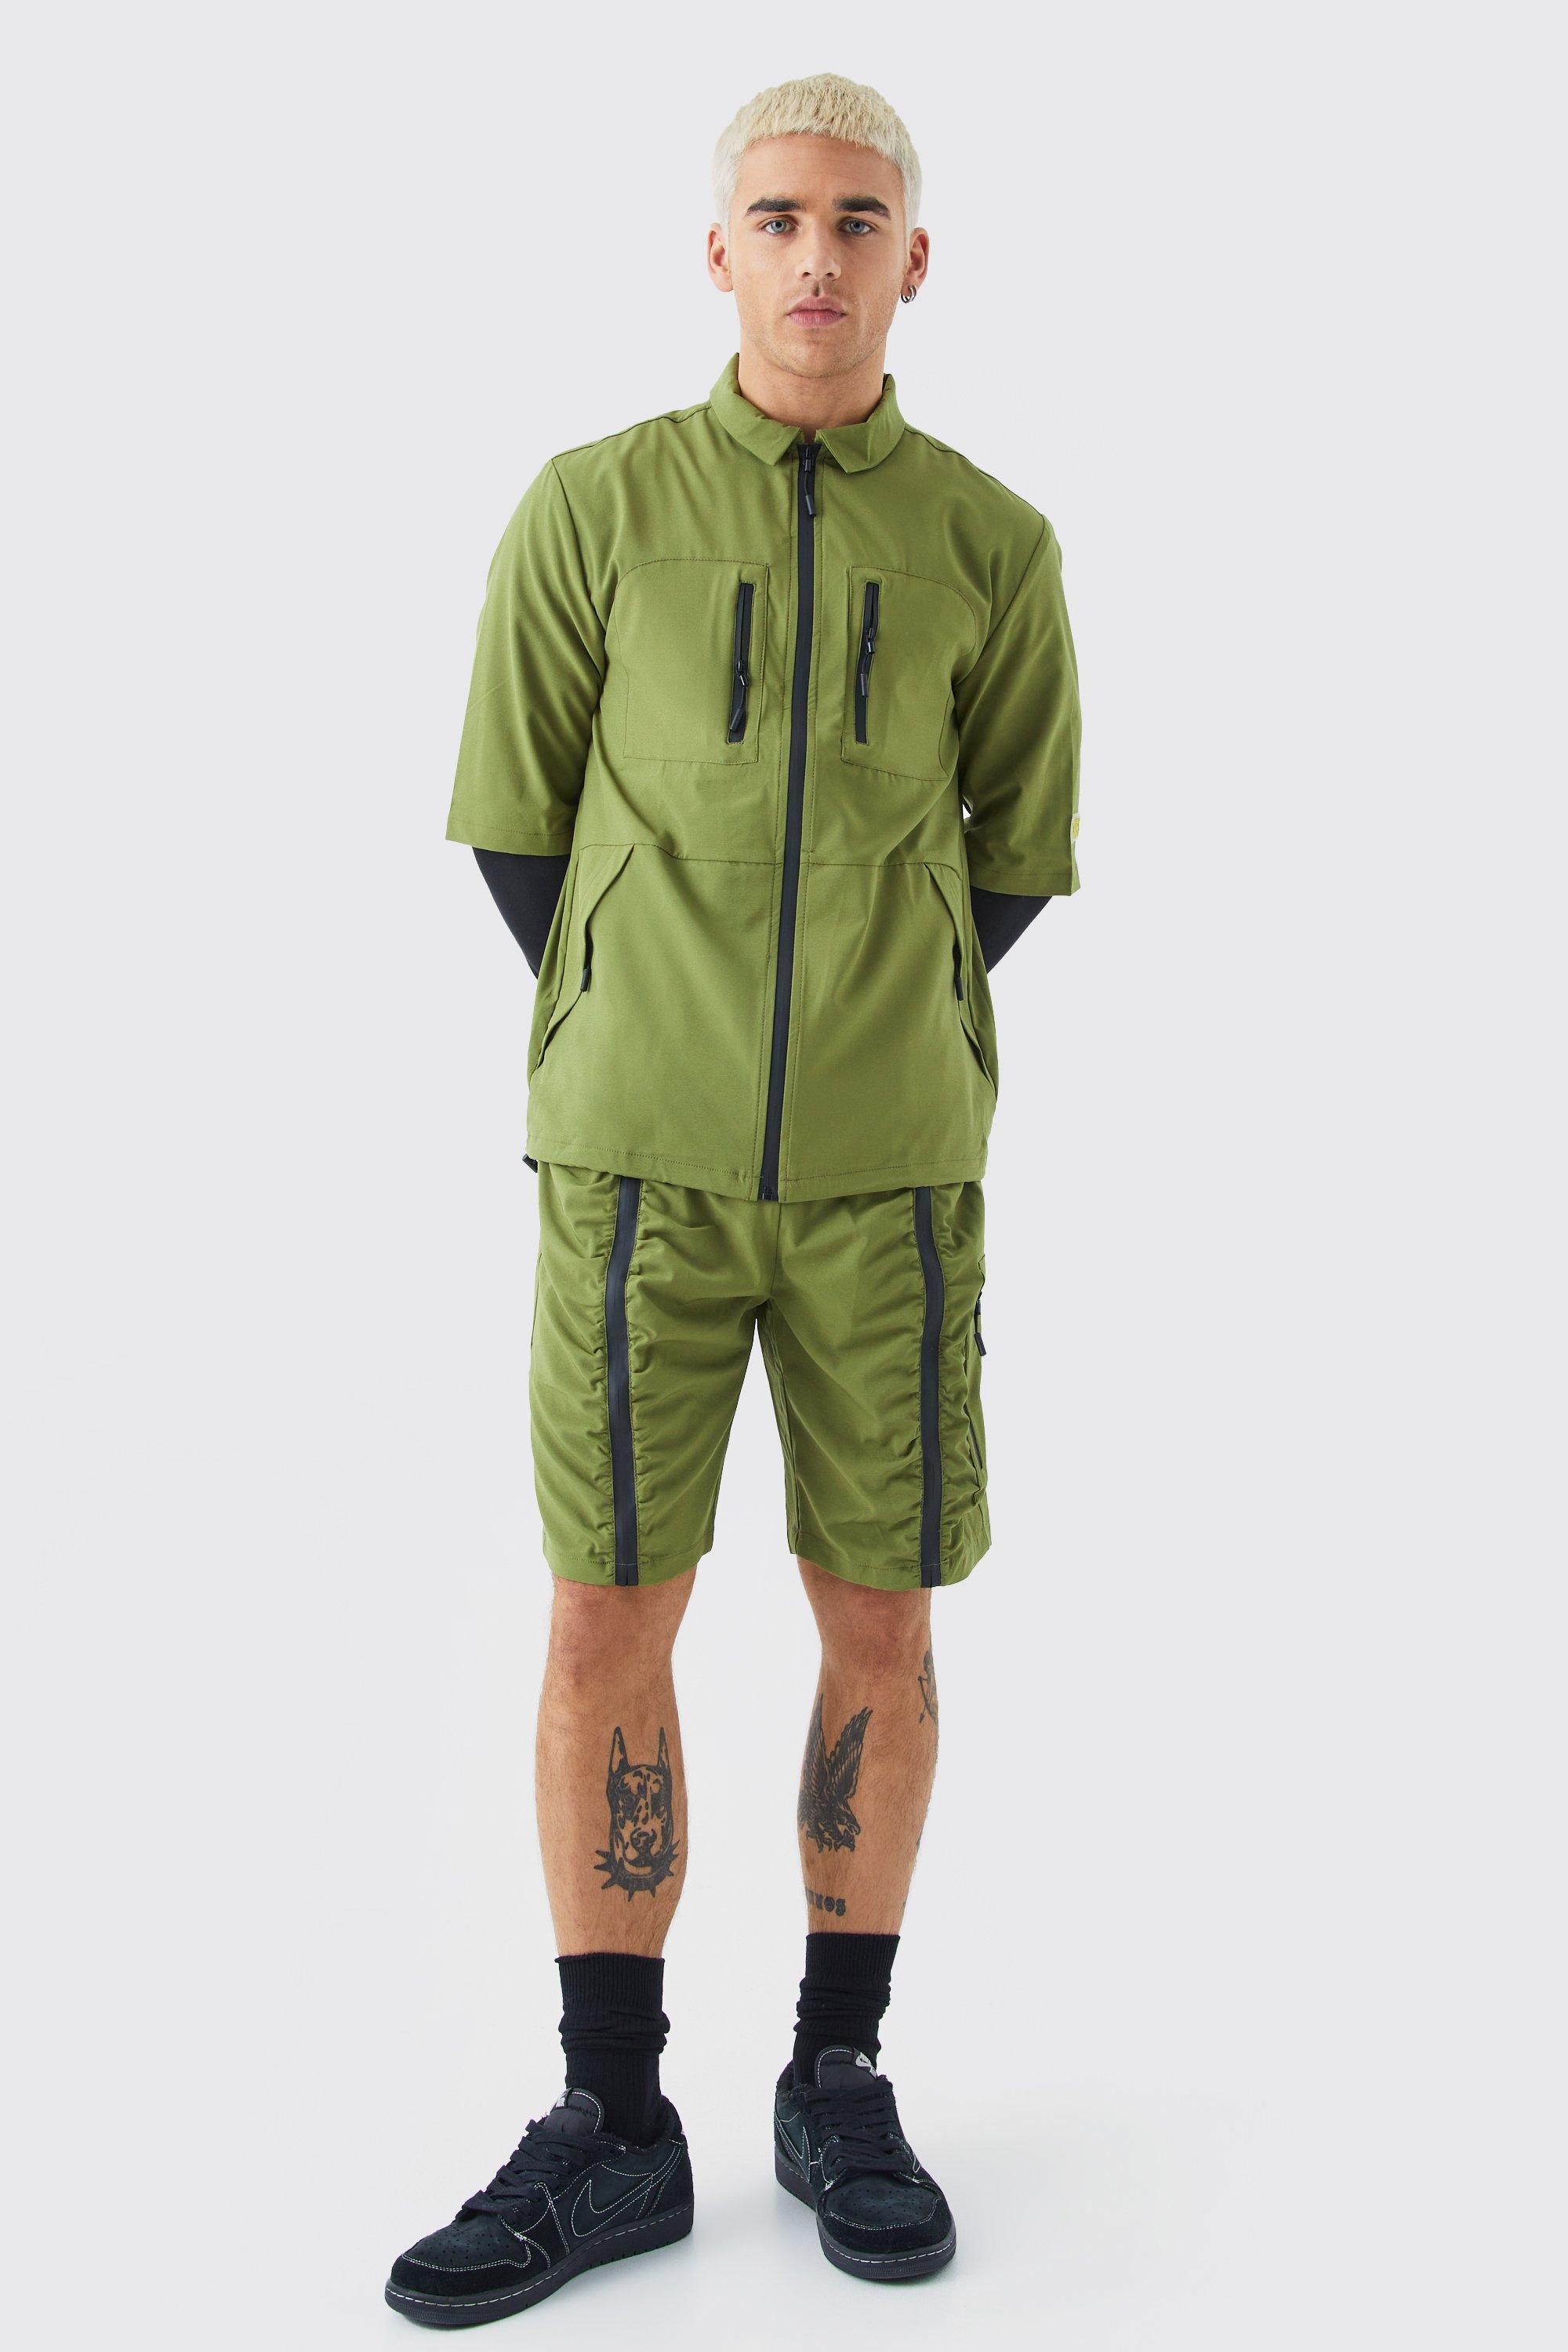 Mens Green Short Sleeve Technical Utility Shirt & Short Set, Green